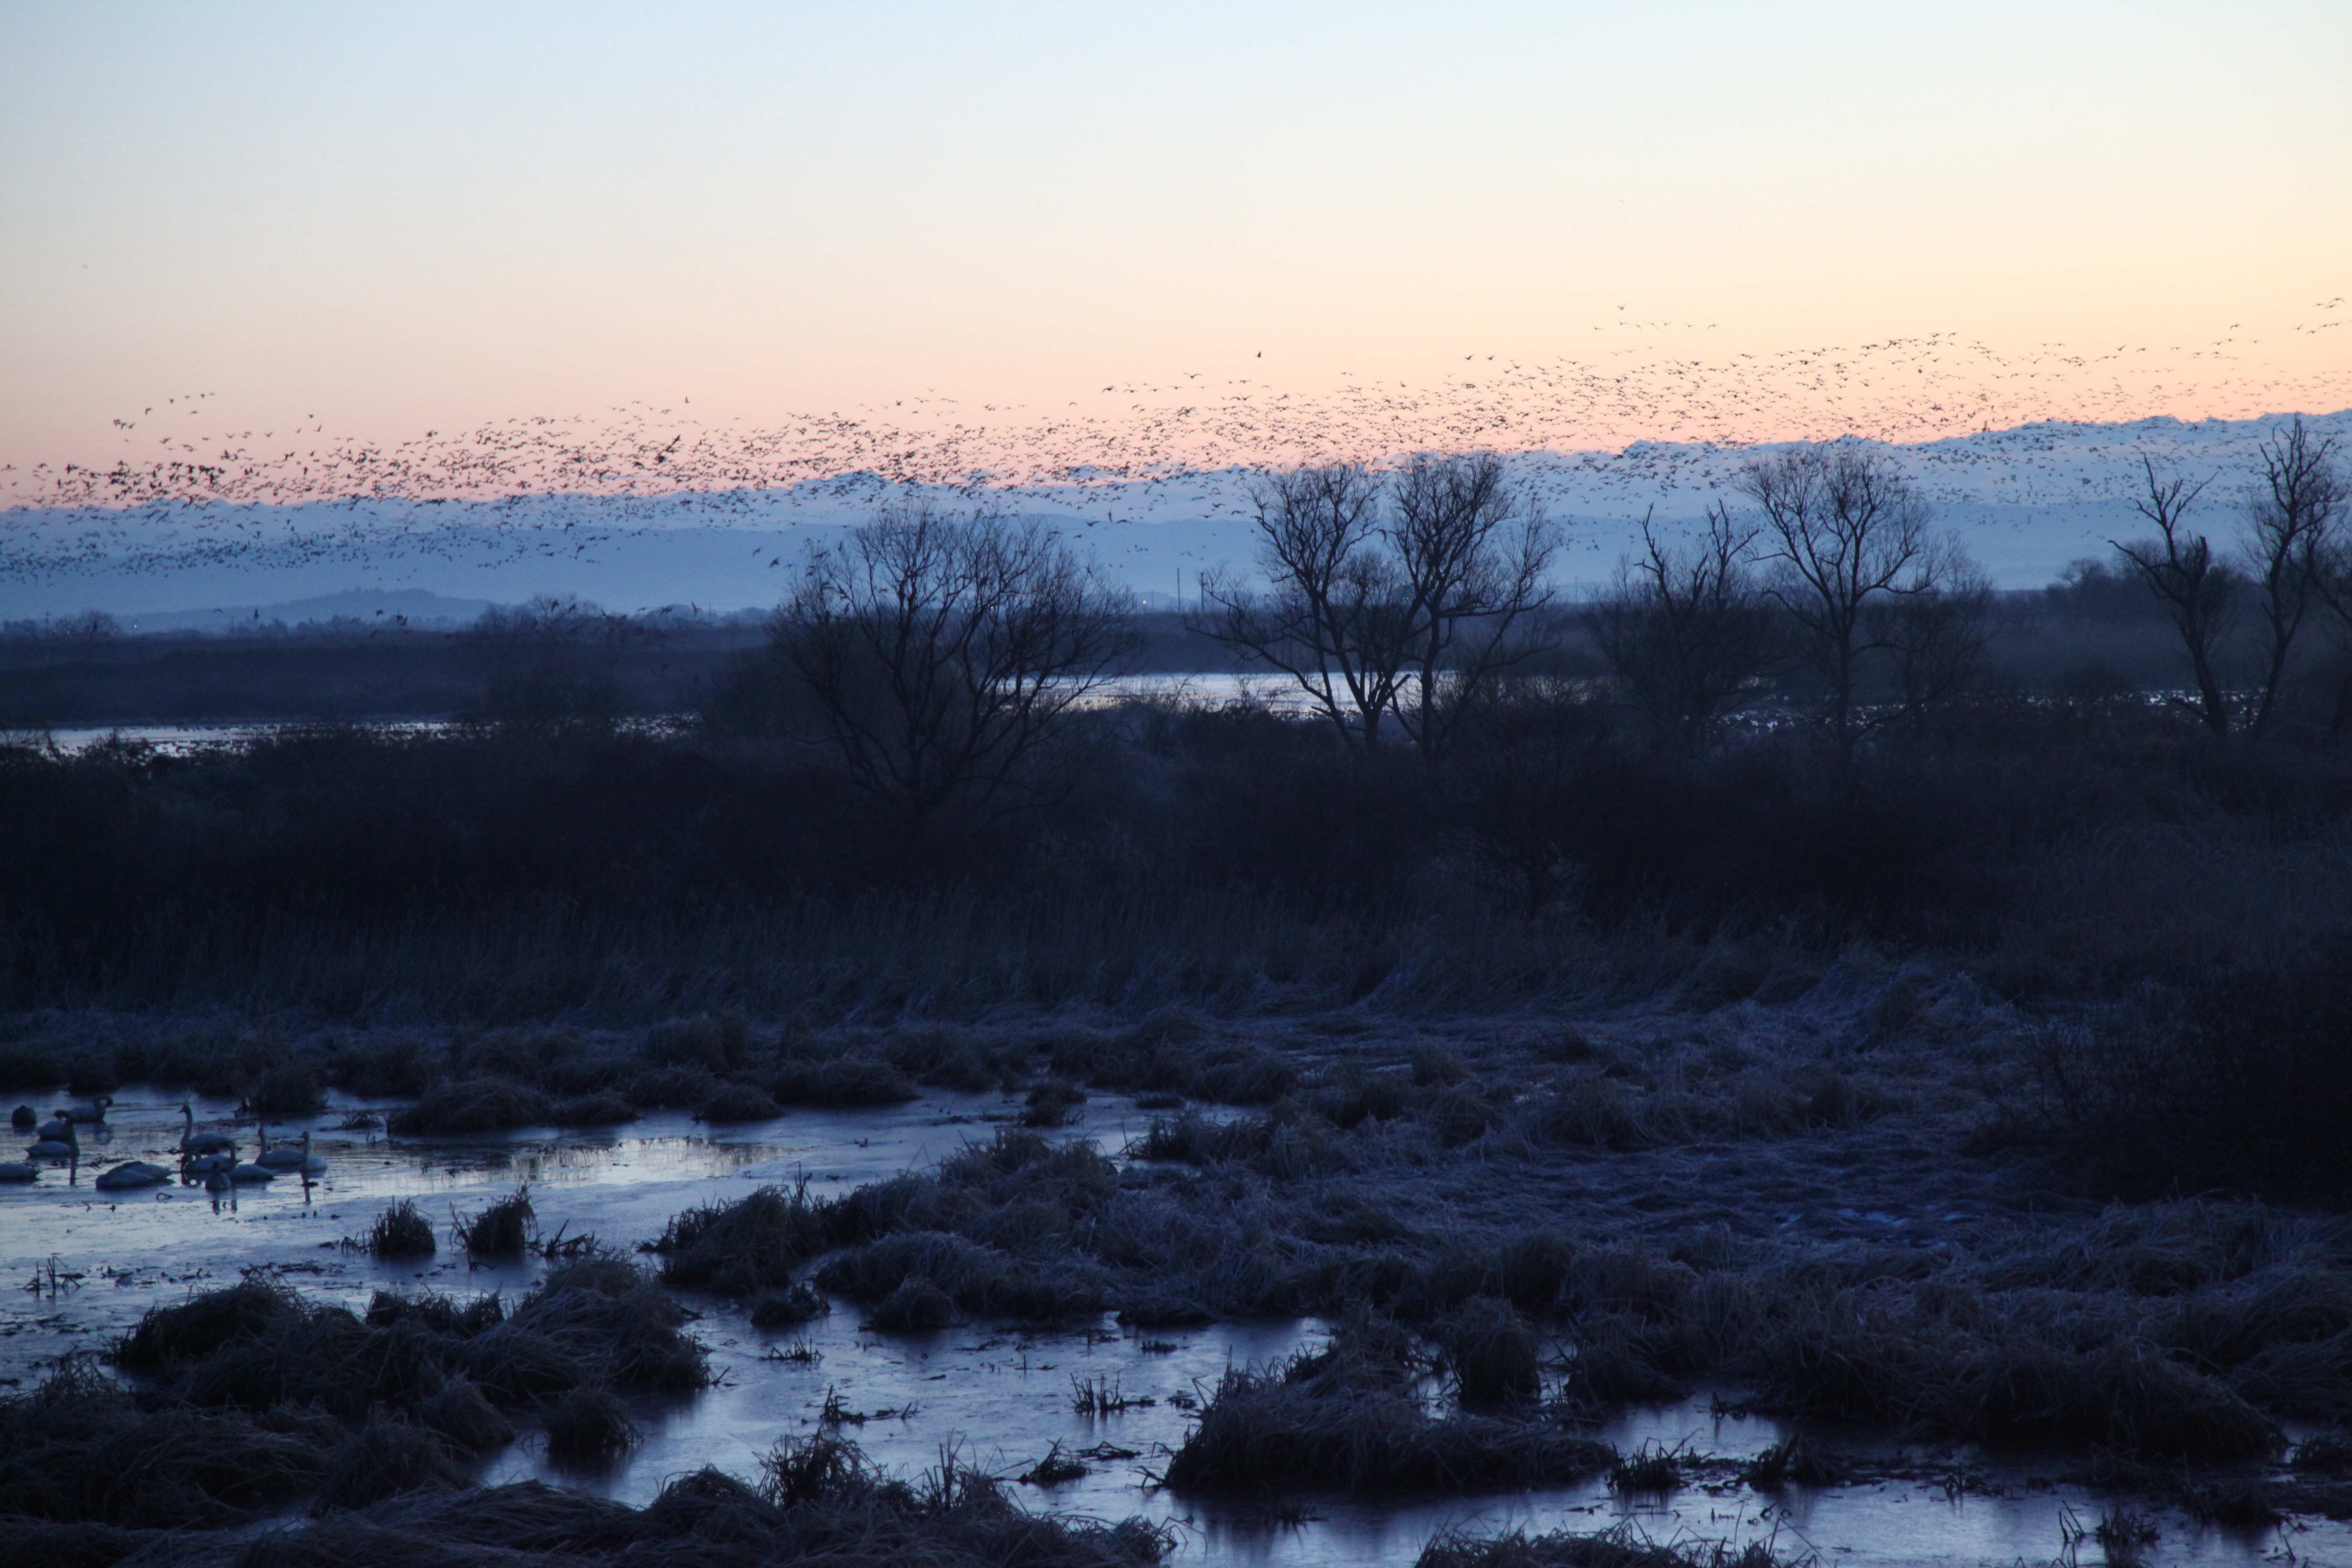 Geese morning flight in mid-December